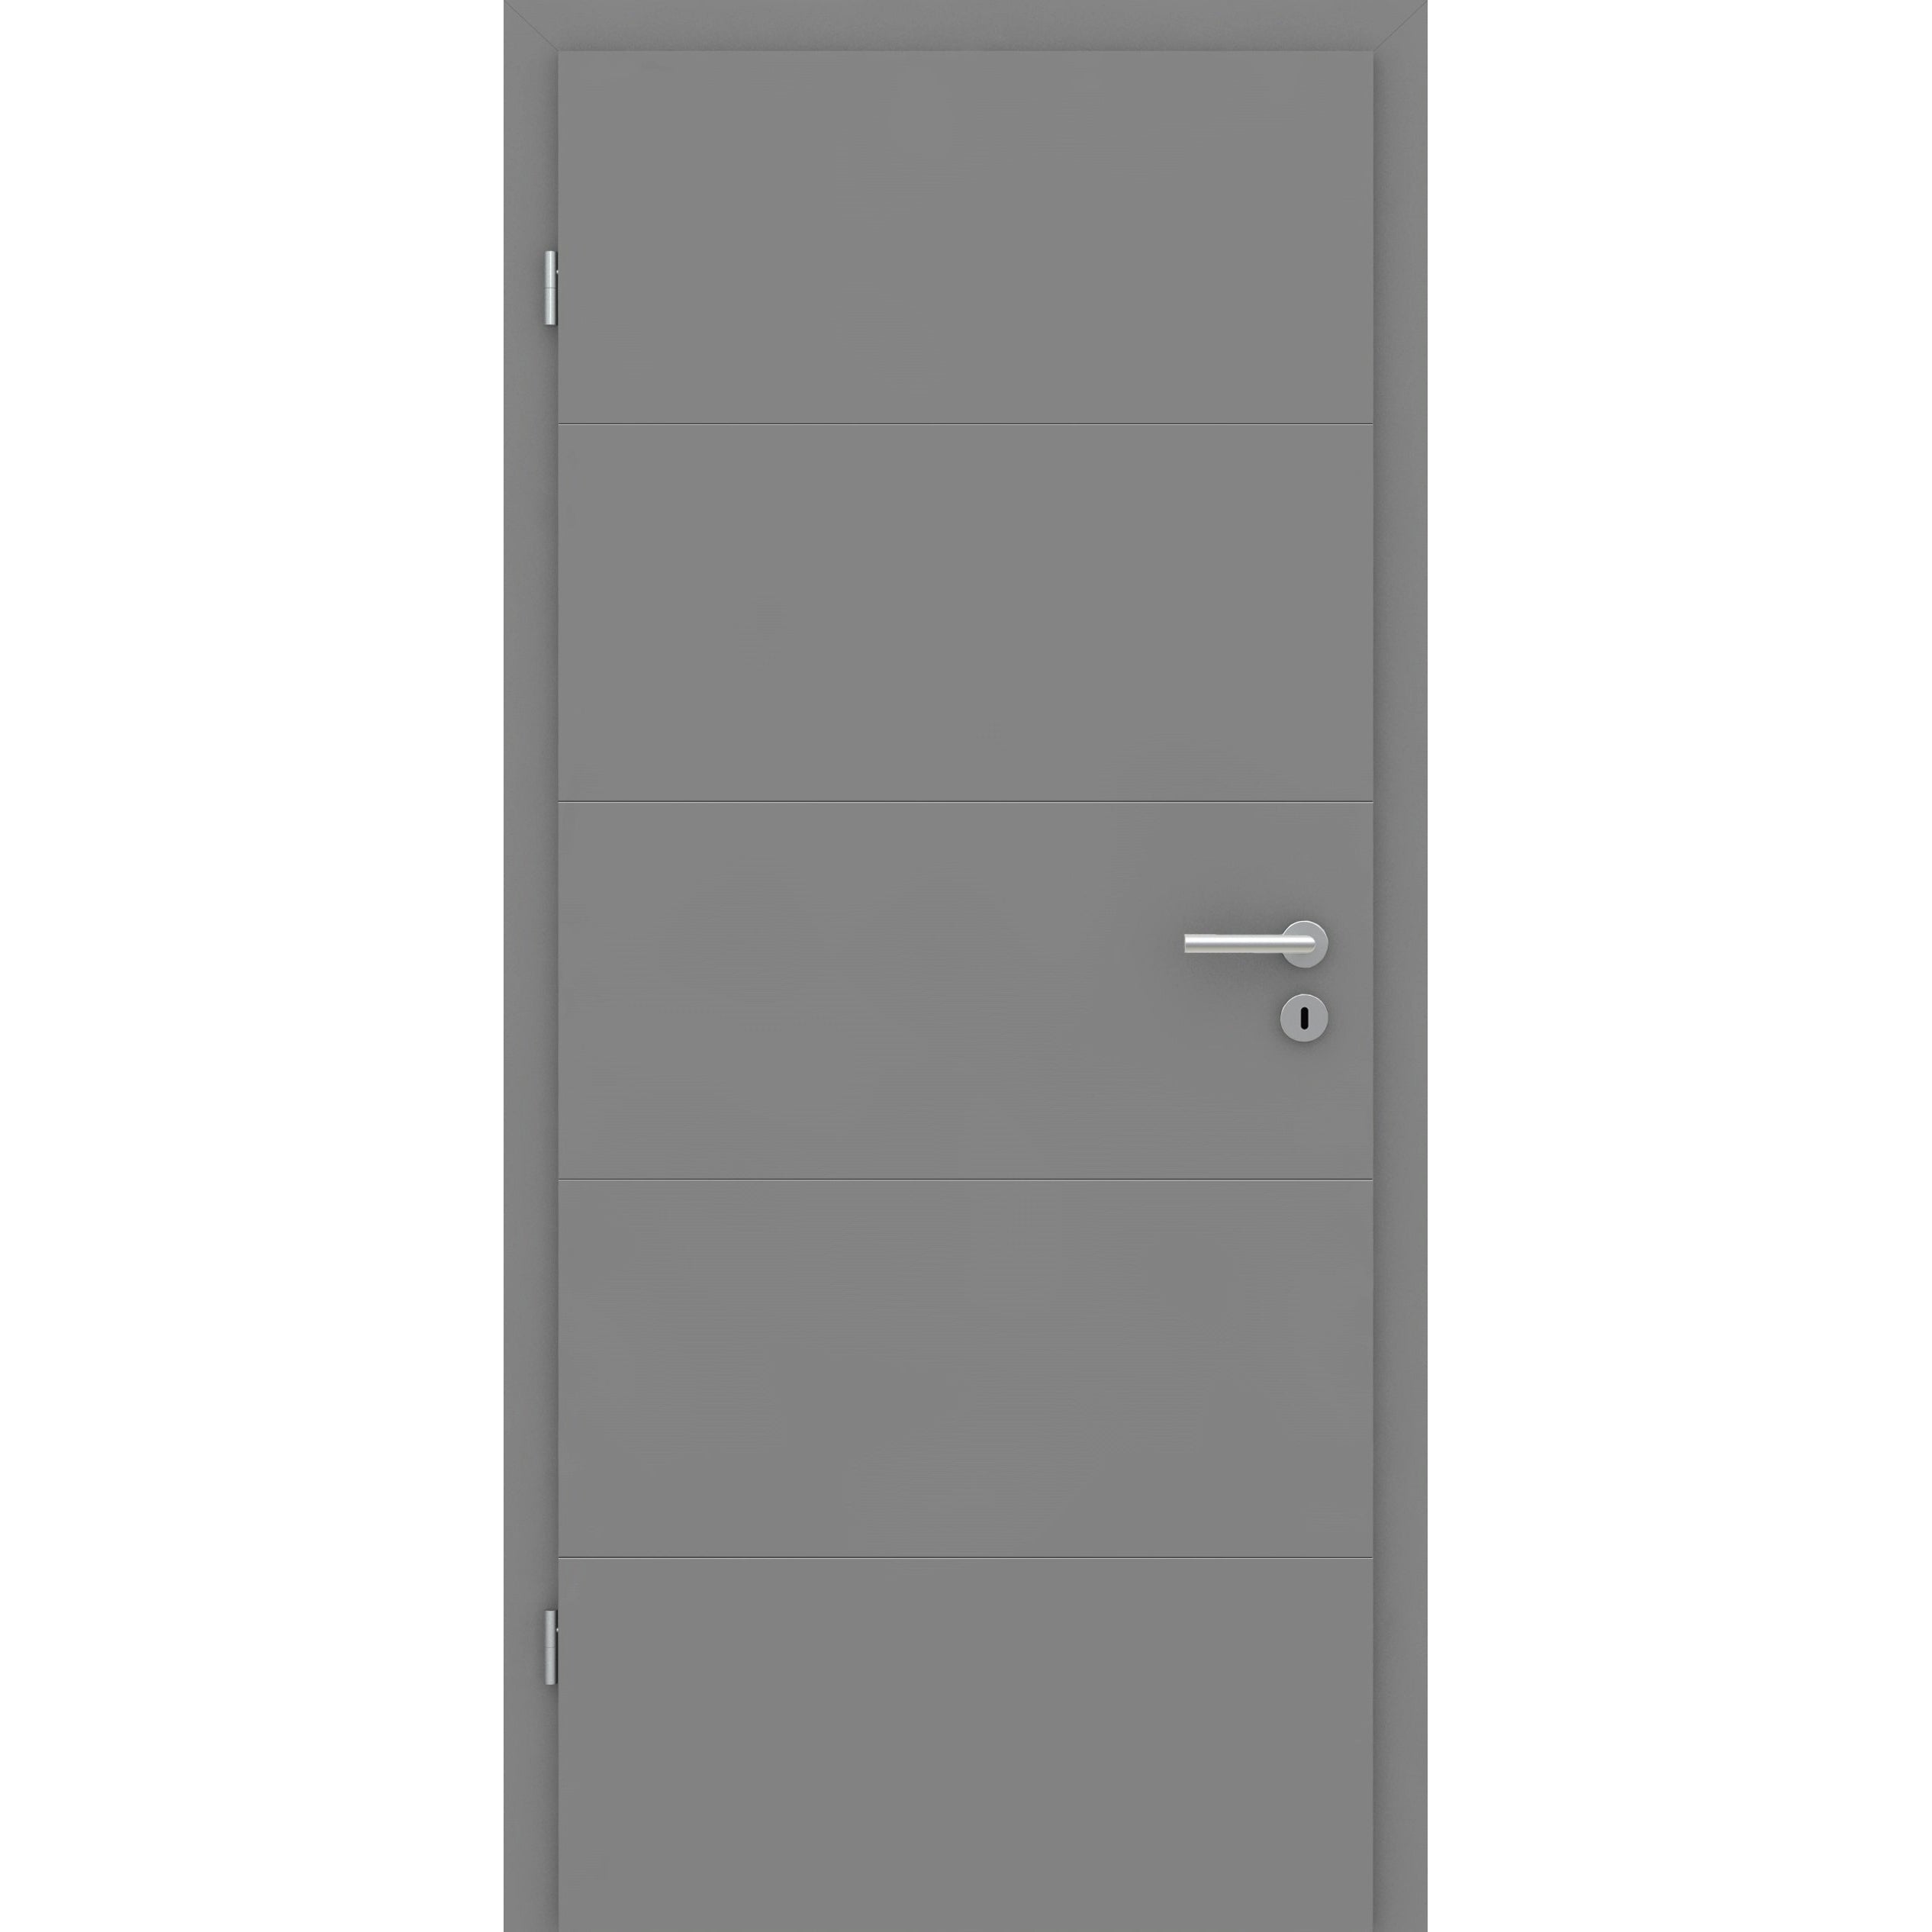 Wohnungseingangstür mit Zarge grau 4 Rillen quer Designkante SK2 / KK3 - Modell Designtür Q47